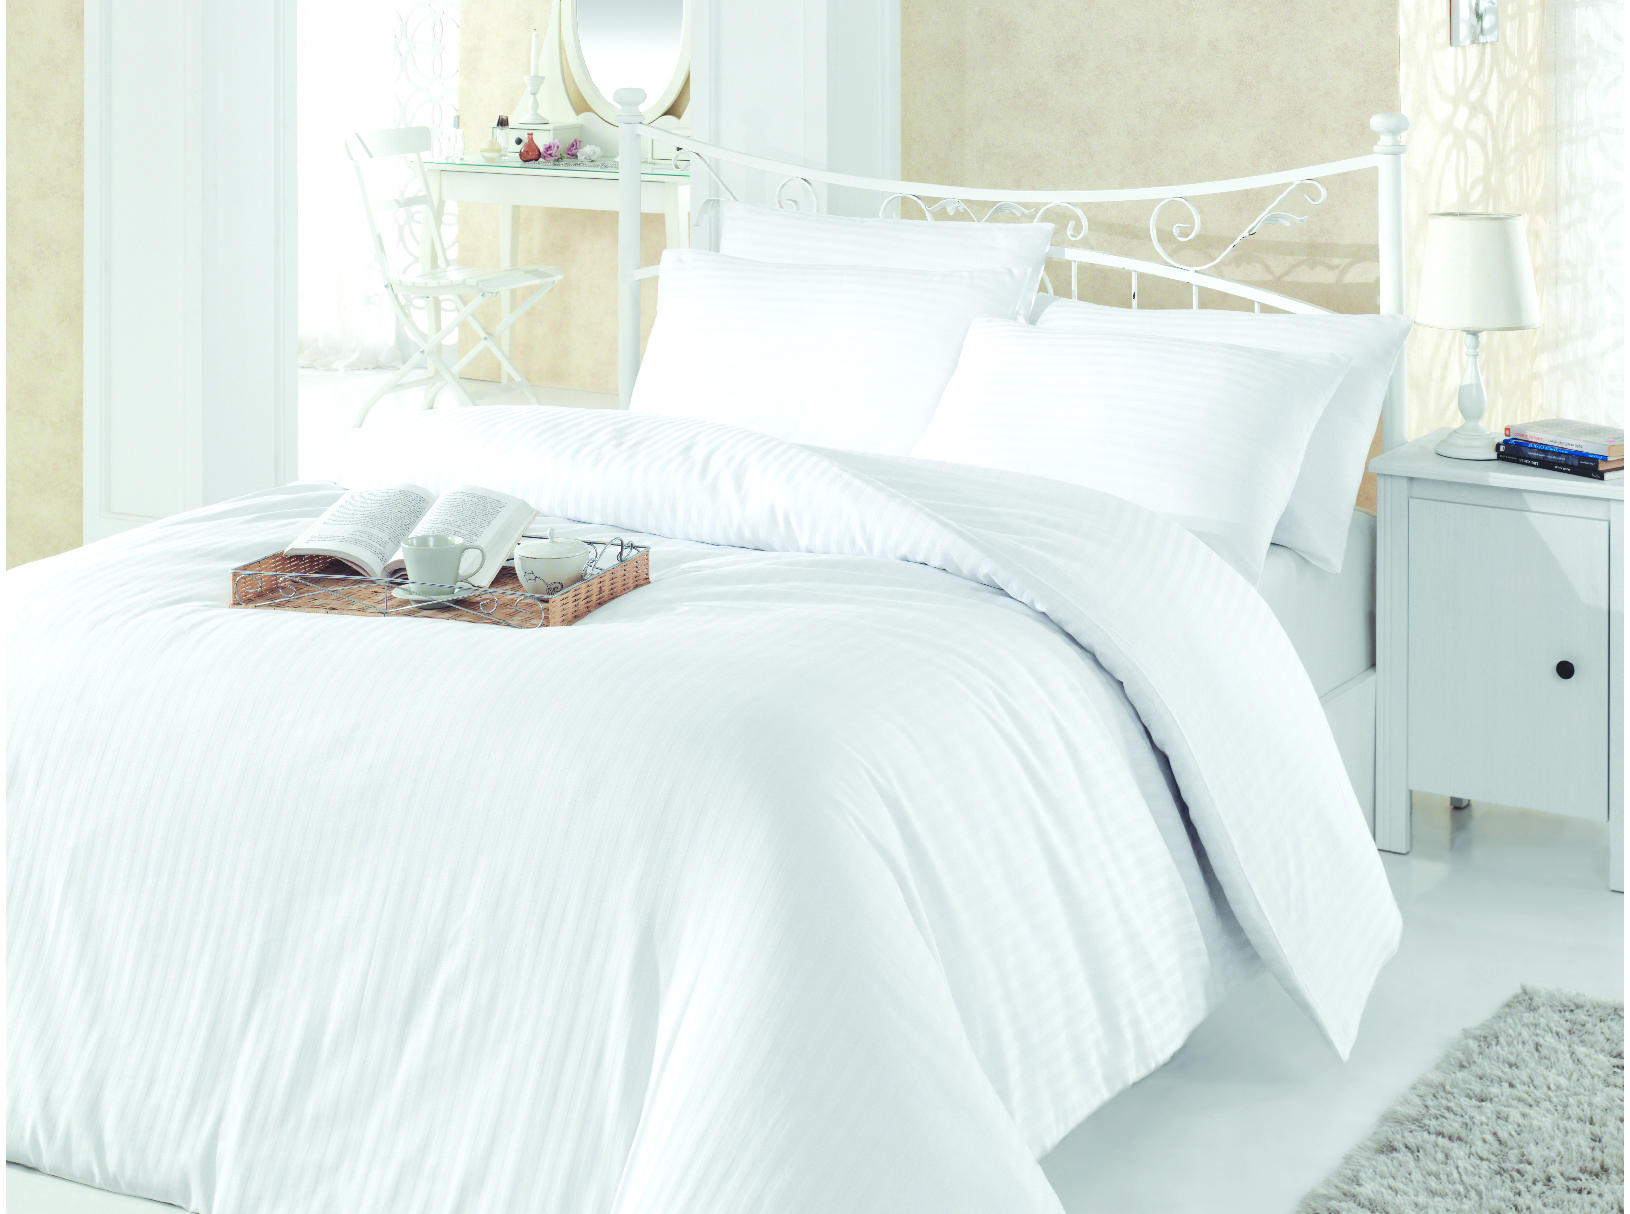 50x70 Hotelska jastučnica satenska bijela na pruge Cotton box